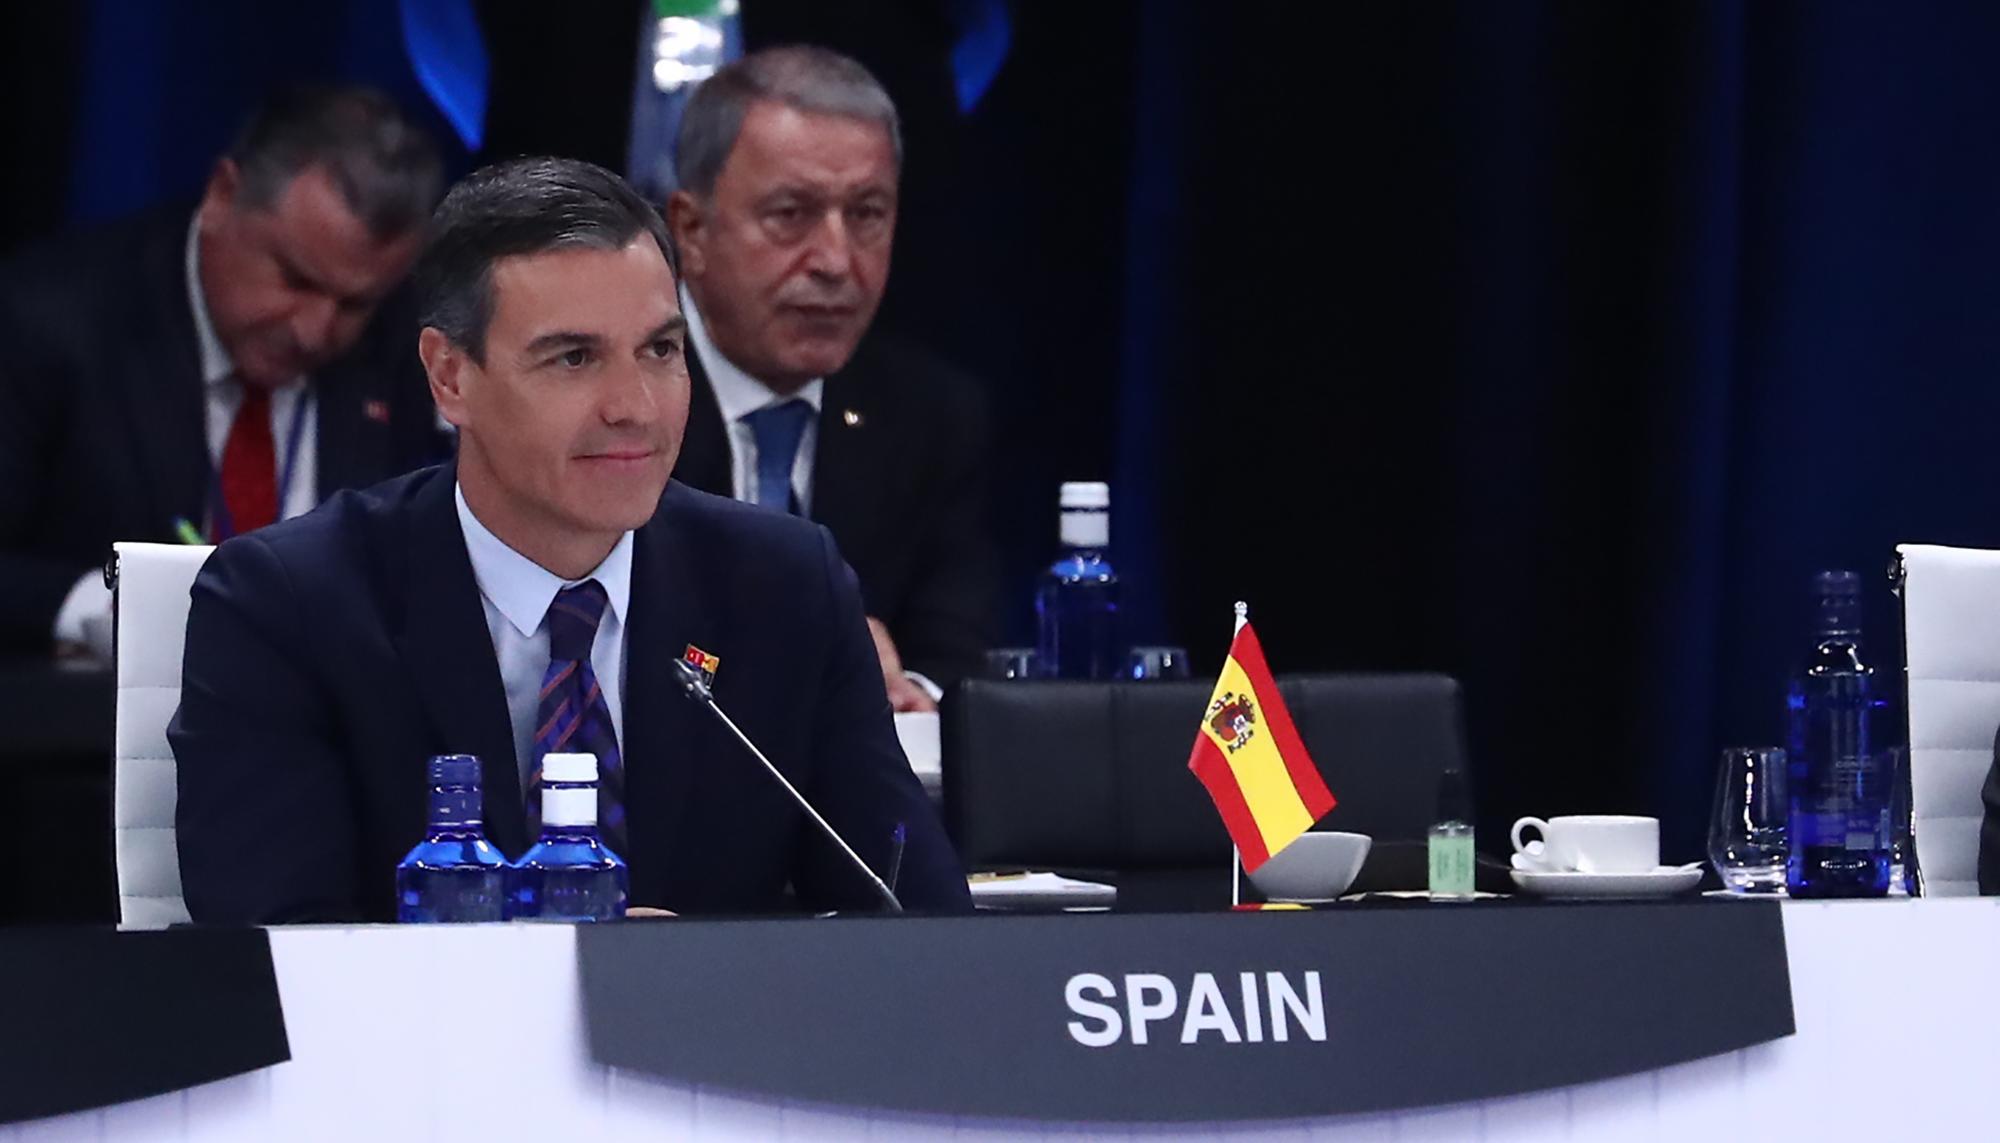 Cumbre de la OTAN Madrid 2022 Ifema - 10